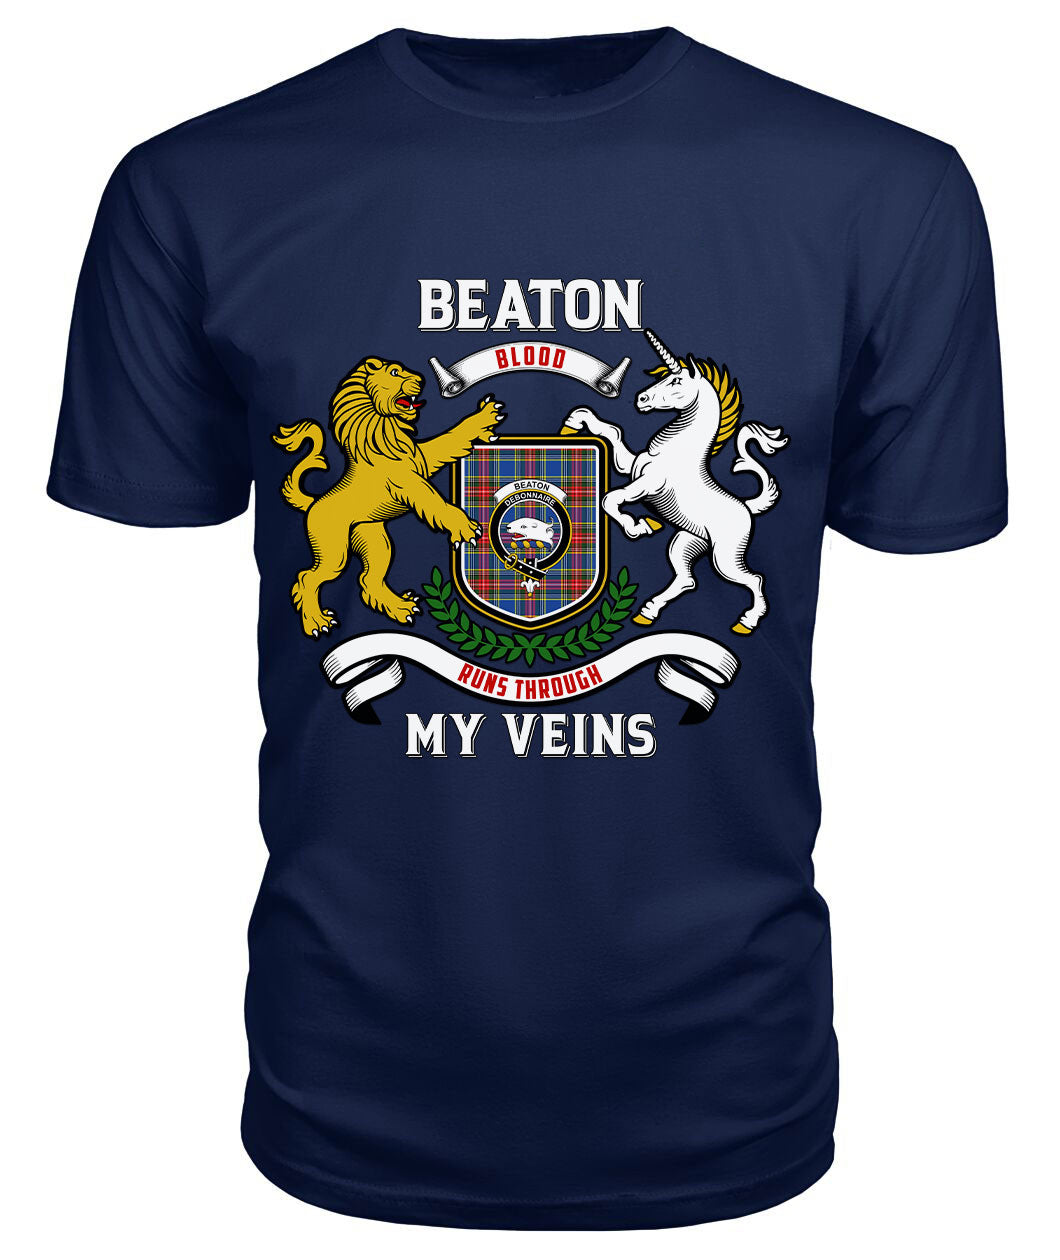 Beaton Modern Tartan Crest 2D T-shirt - Blood Runs Through My Veins Style